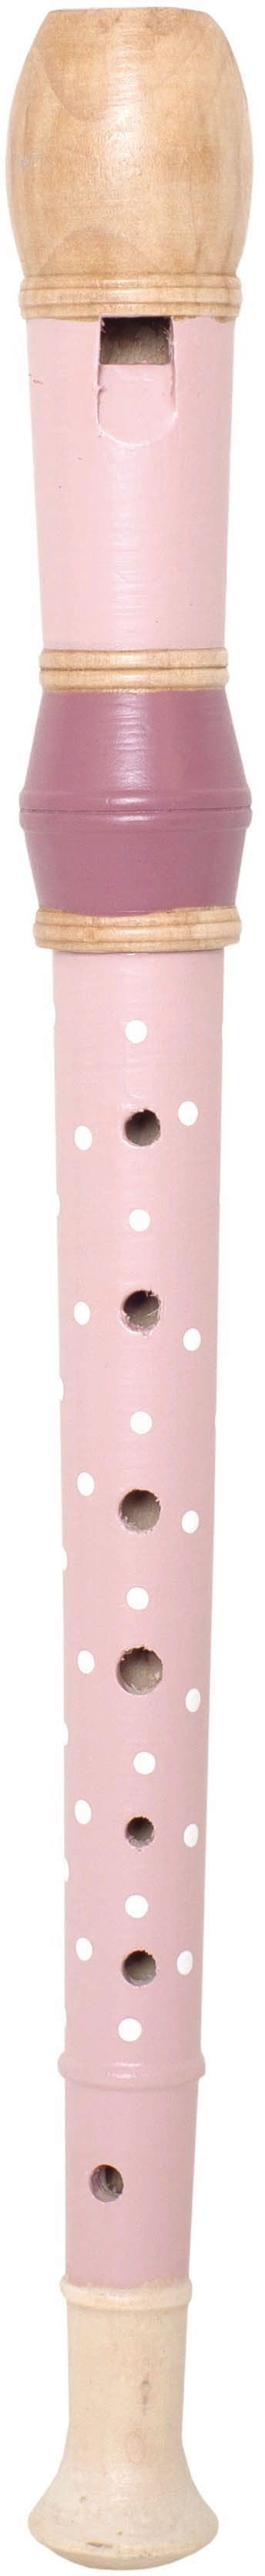 JABADABADO Recorder M14083 pink pink